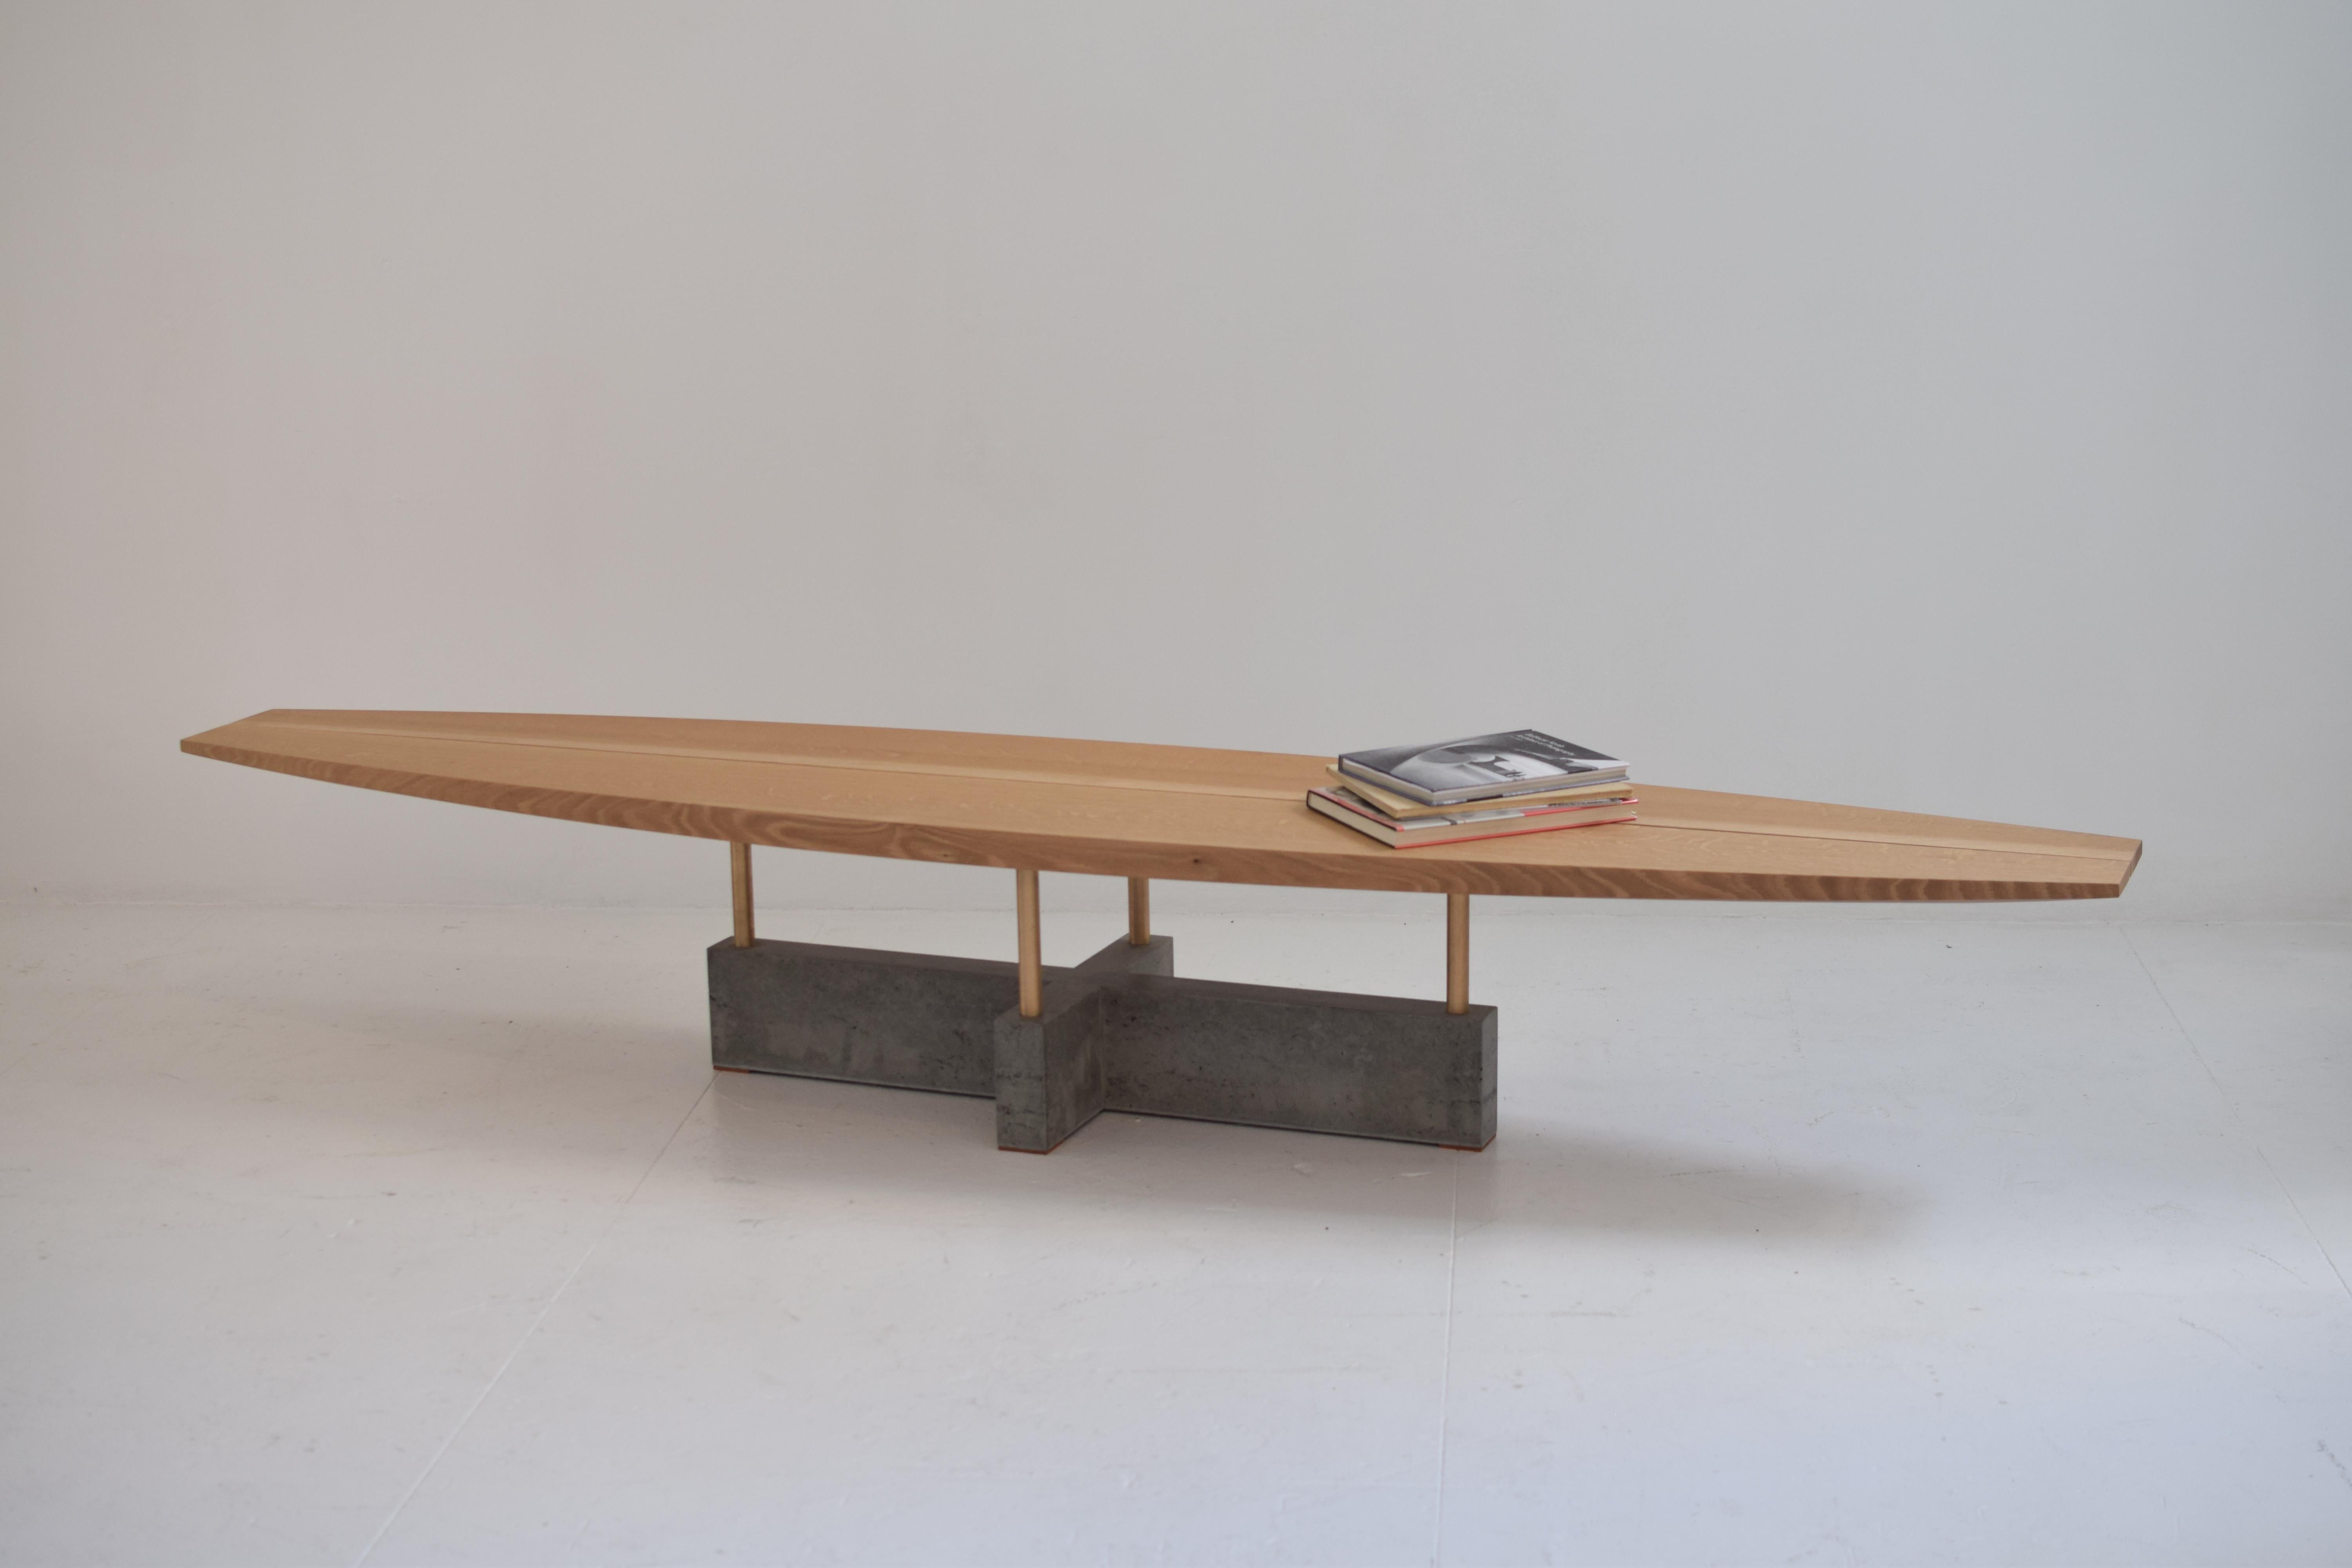 Freitragende Bank/Tisch

Diese Bank/Tisch vereint skulpturale Form und minimalistische Ästhetik. Die geschnitzte Holzbank in Kombination mit dem glatten, geometrischen Sockel ist der Blickfang in jedem Raum. Die handgeformte Surfbrettplatte